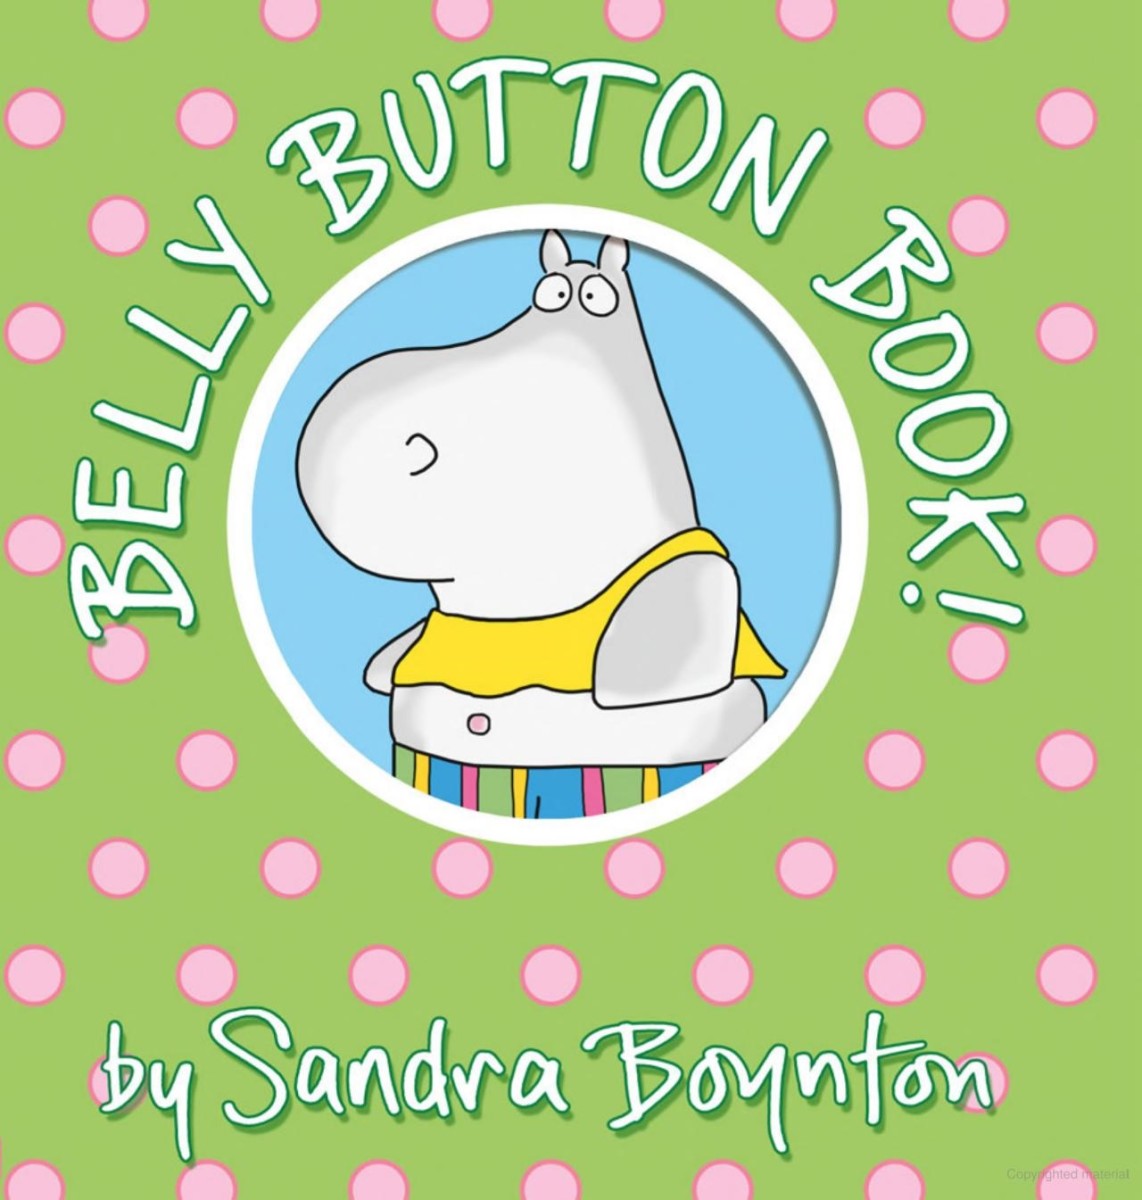 The Belly Button Book by Sandra Boynton